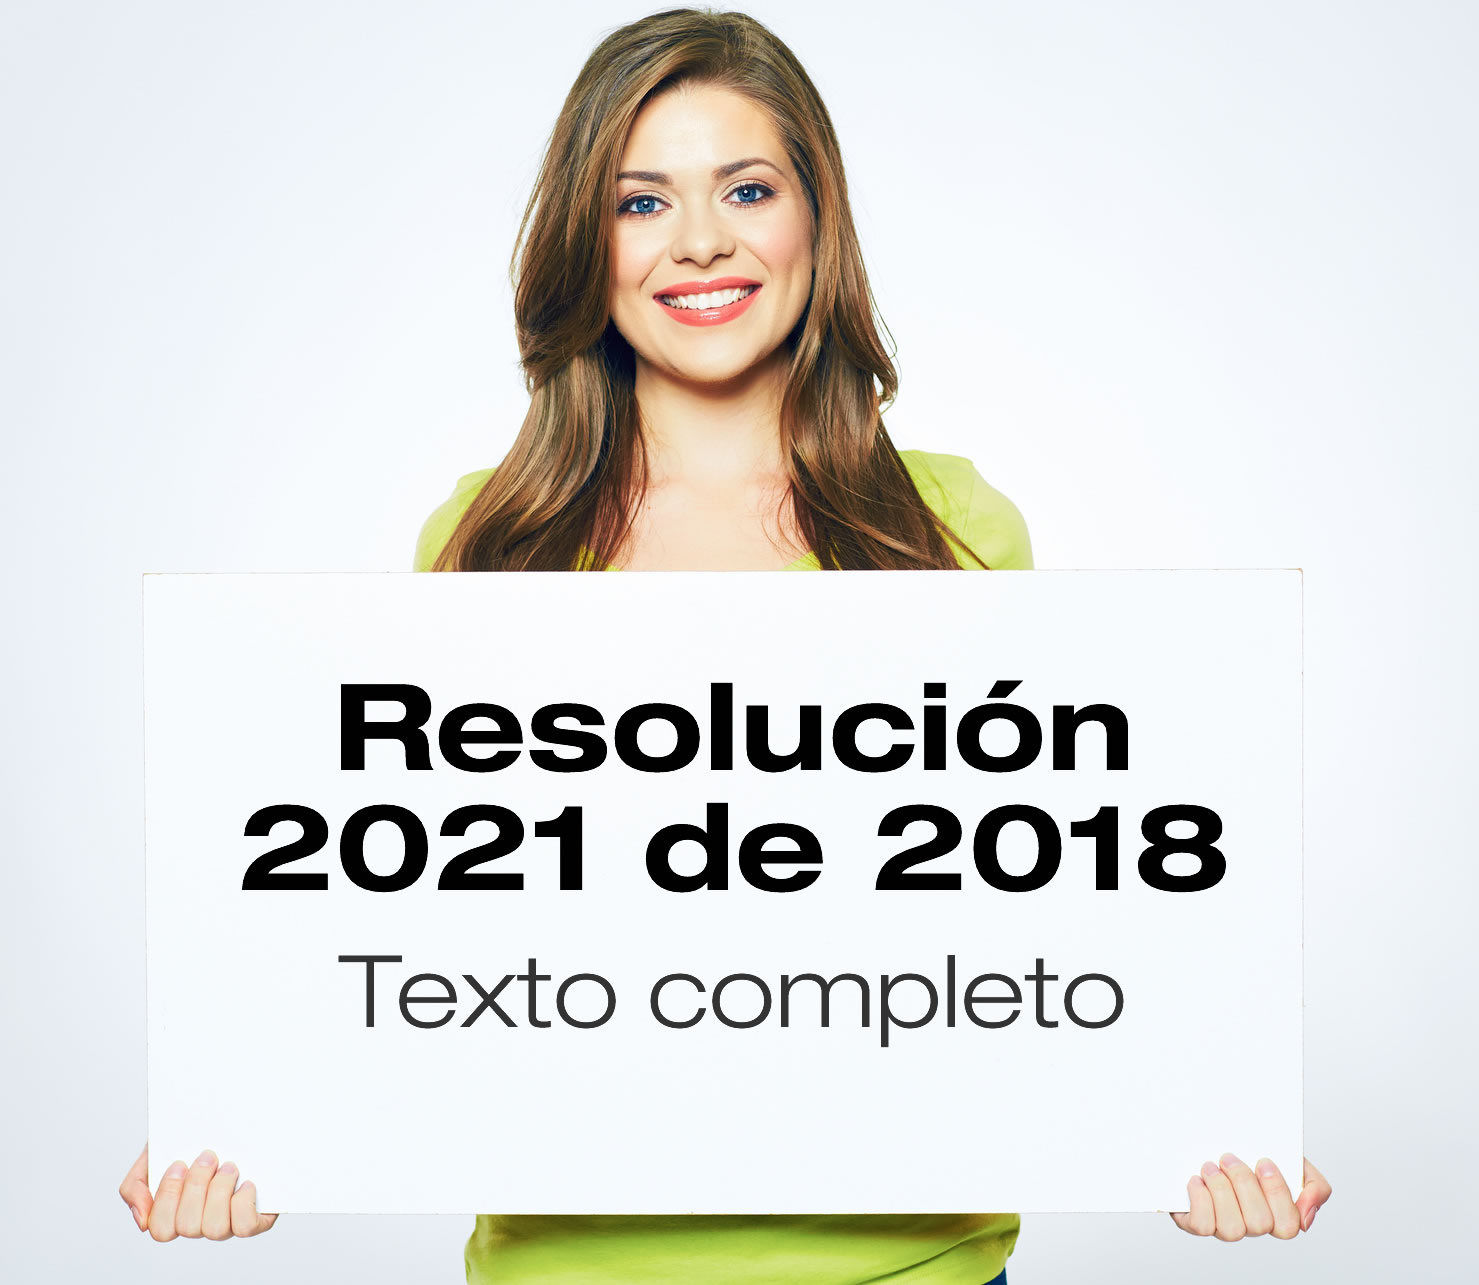 Resolución 2021 de 2018